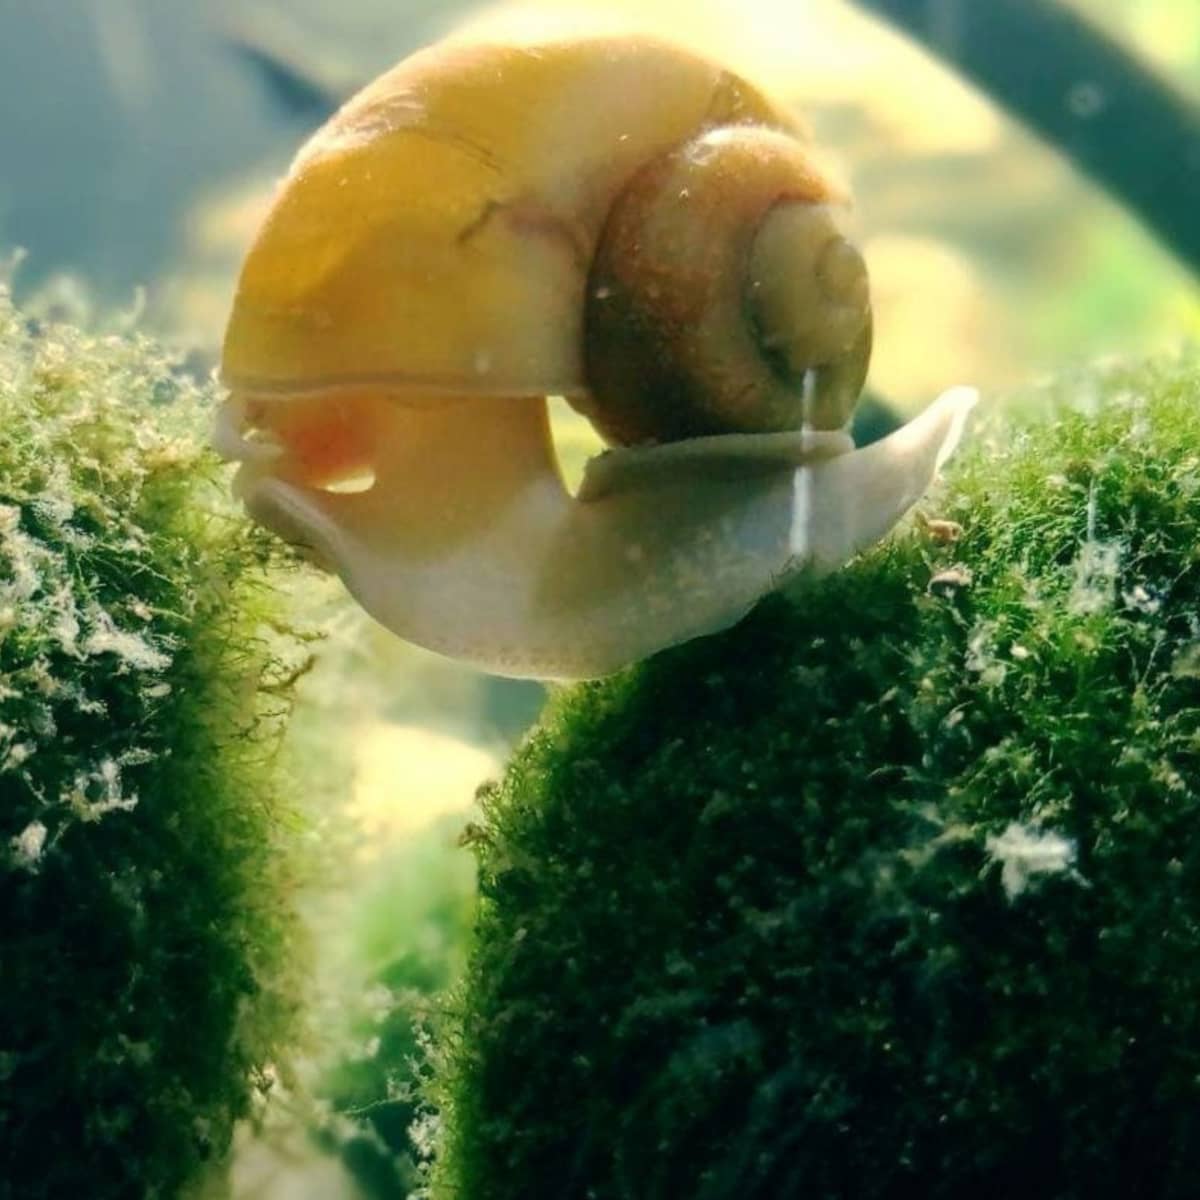 Natural Moss Ball Transparent Landscape Balls Filter For Aquarium